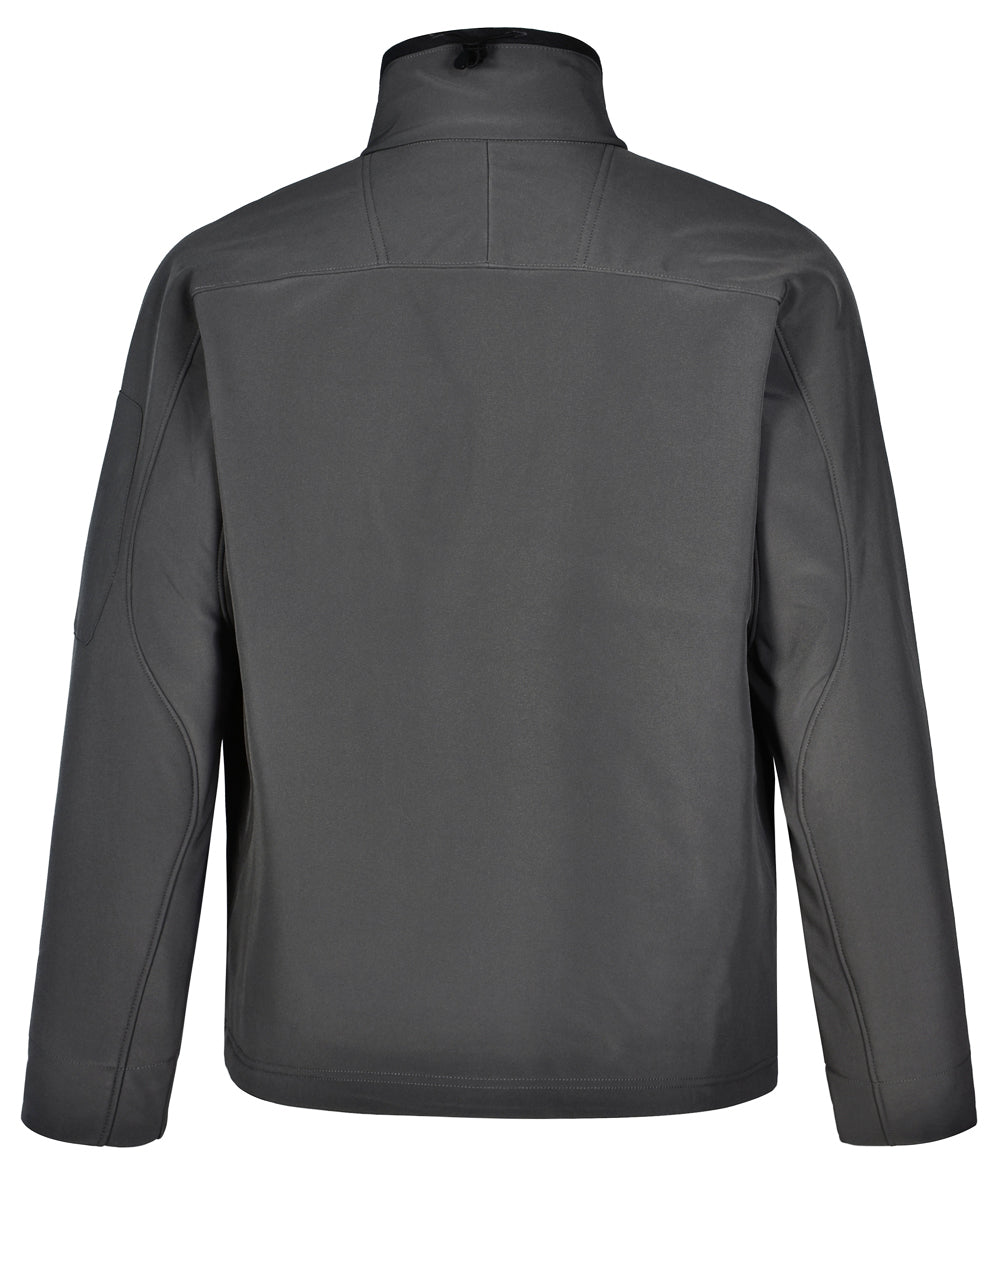 PIT LANE CLOTHING Titanium Embroidered Softshell Racing jacket